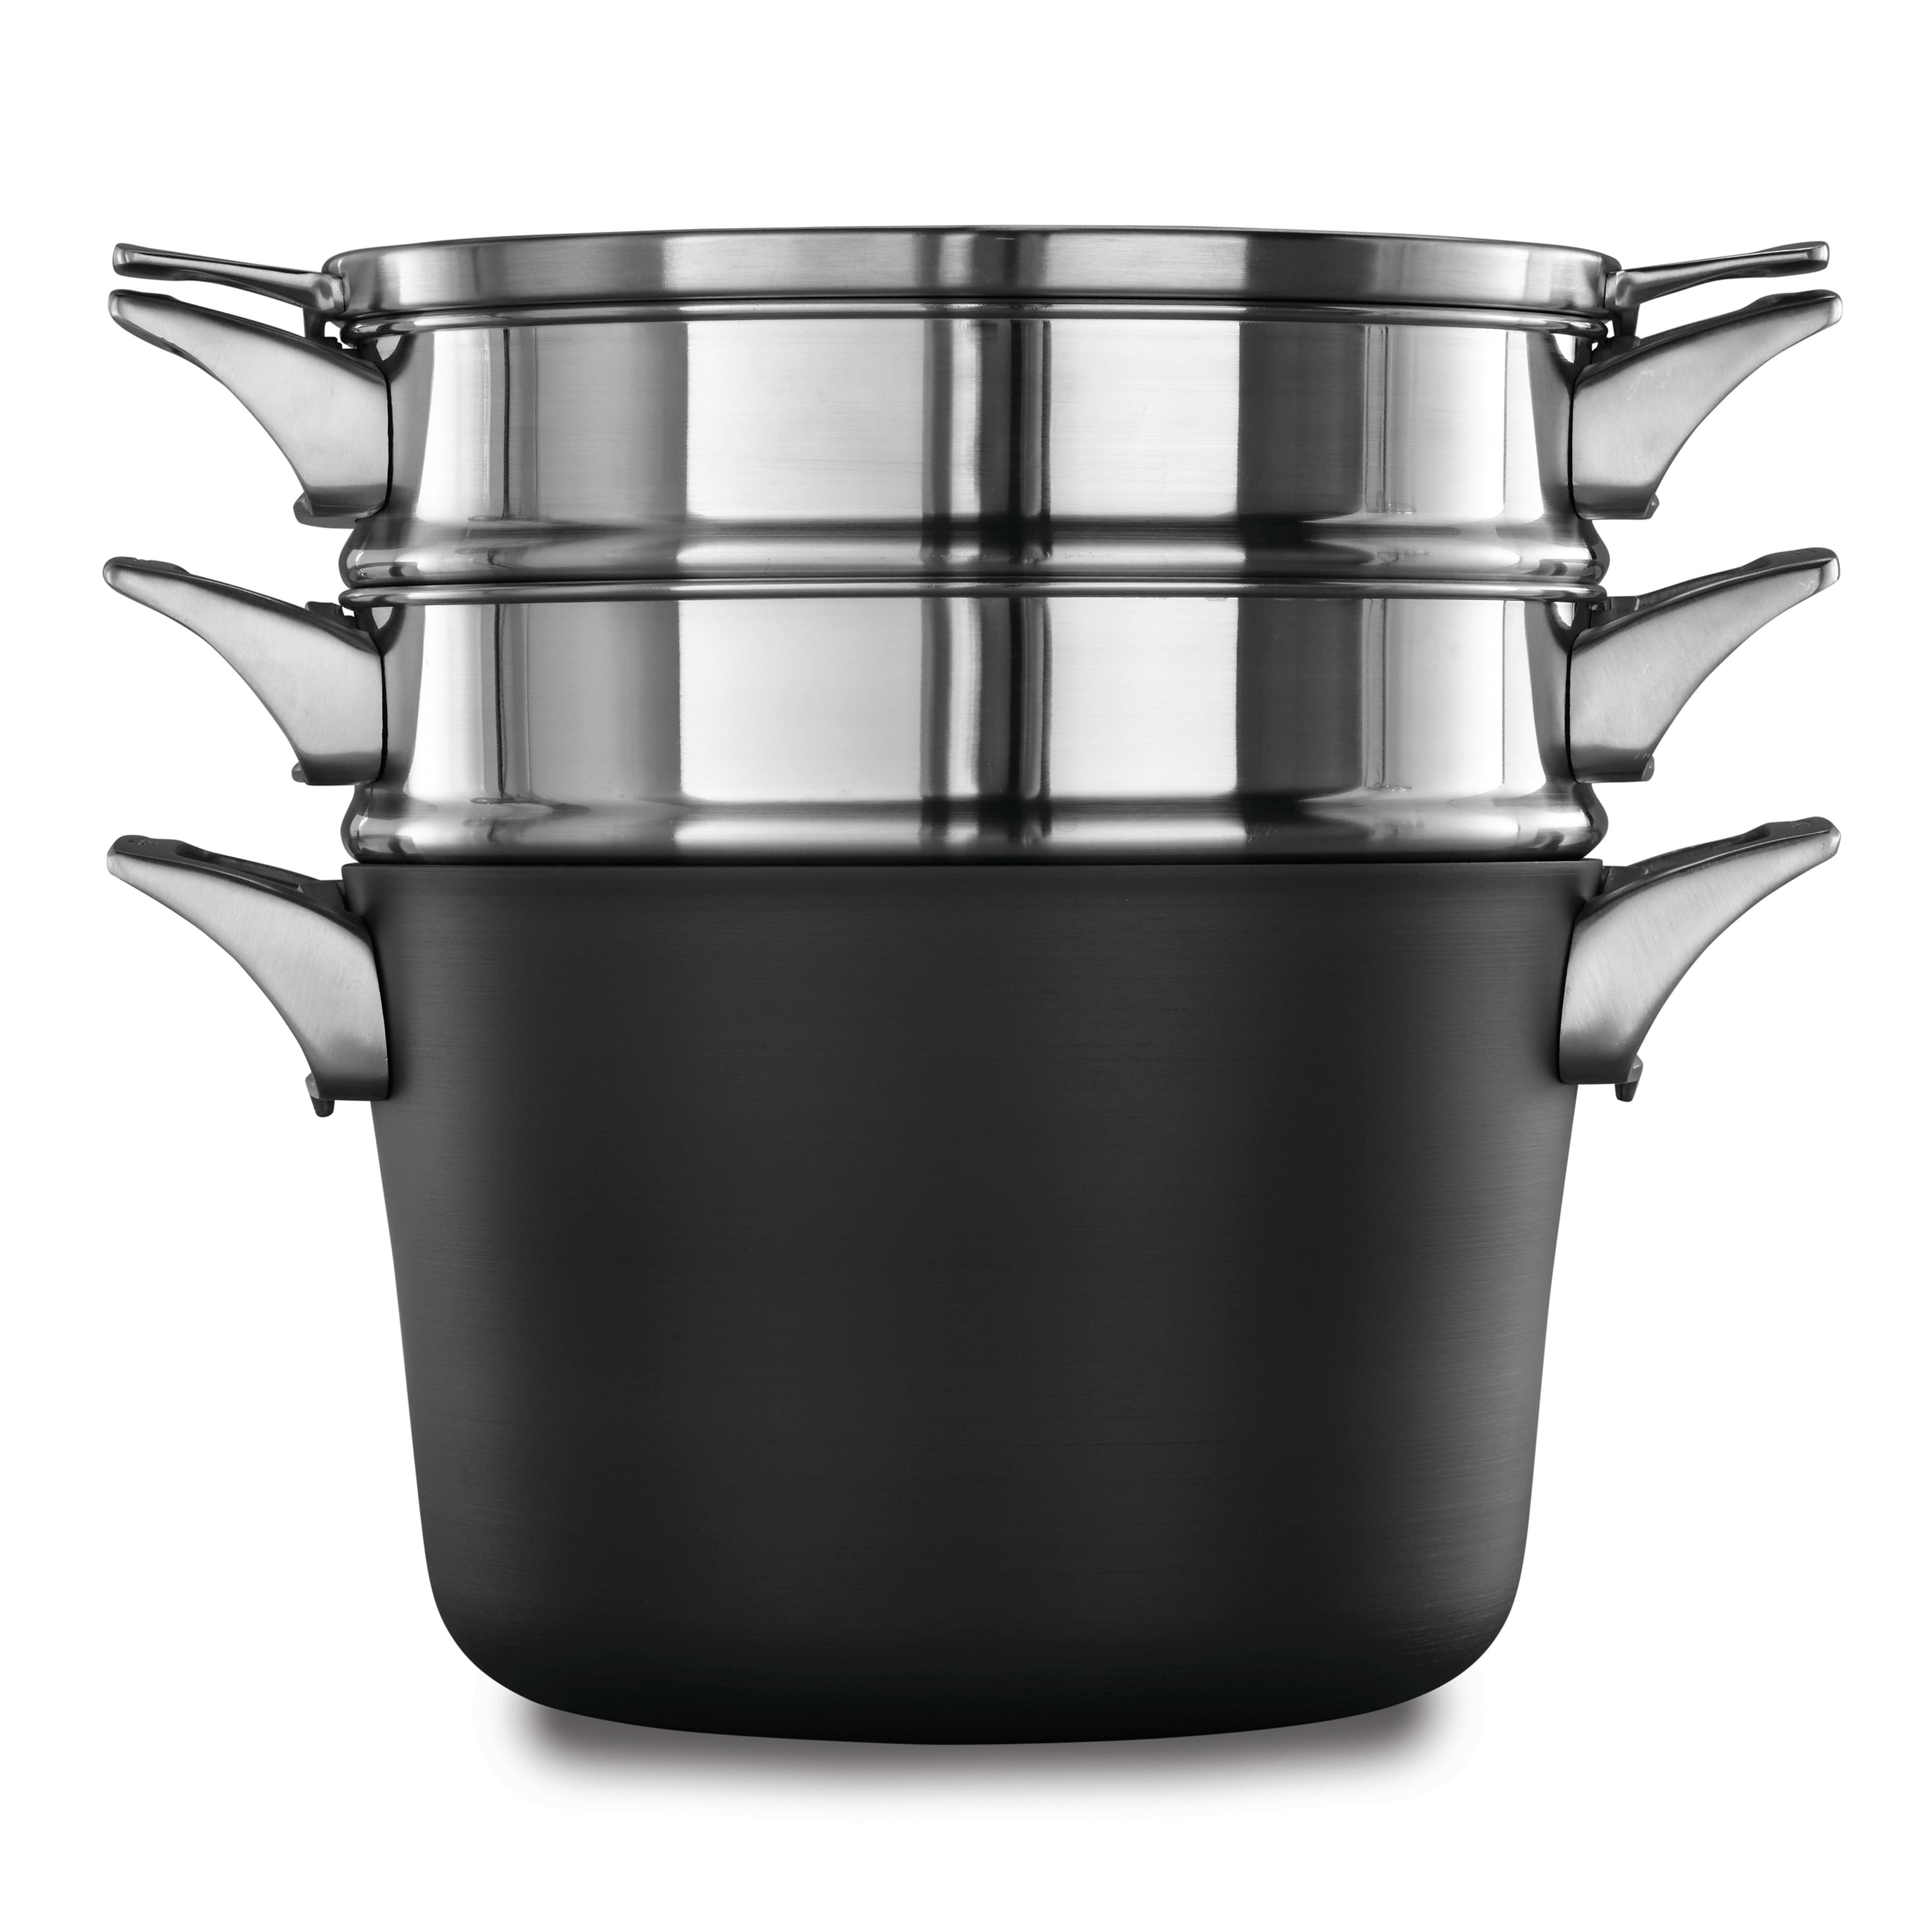 Calphalon Premier Hard-Anodized Nonstick Cookware, 11-Piece Pots and Pans  Set